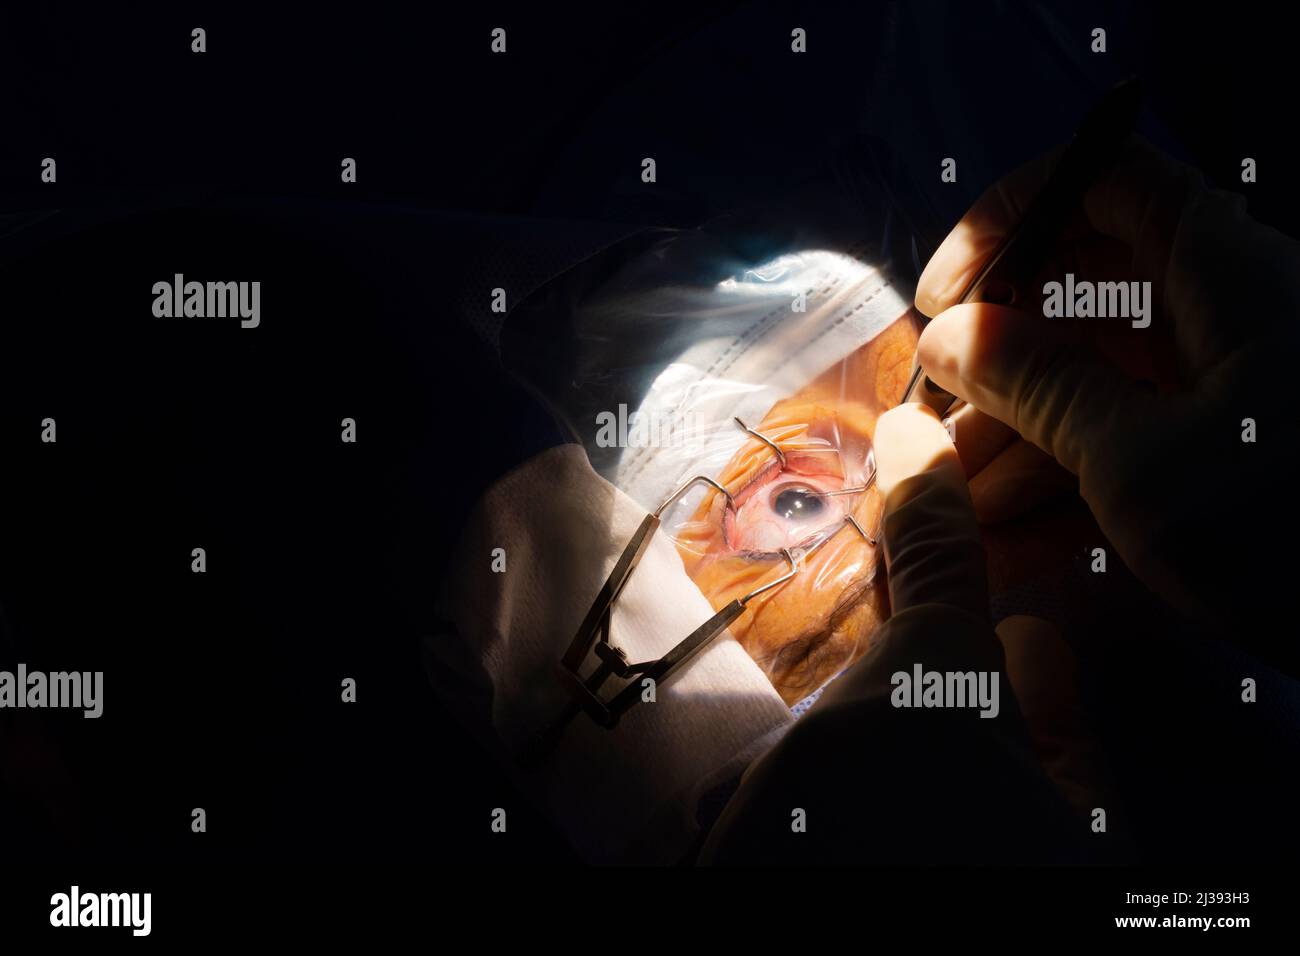 Gros plan d'un œil humain, chirurgie de la cataracte dans une salle d'opération d'ophtalmologie. Champ stérile et mains du chirurgien avec des gants stériles insérant une catara Banque D'Images